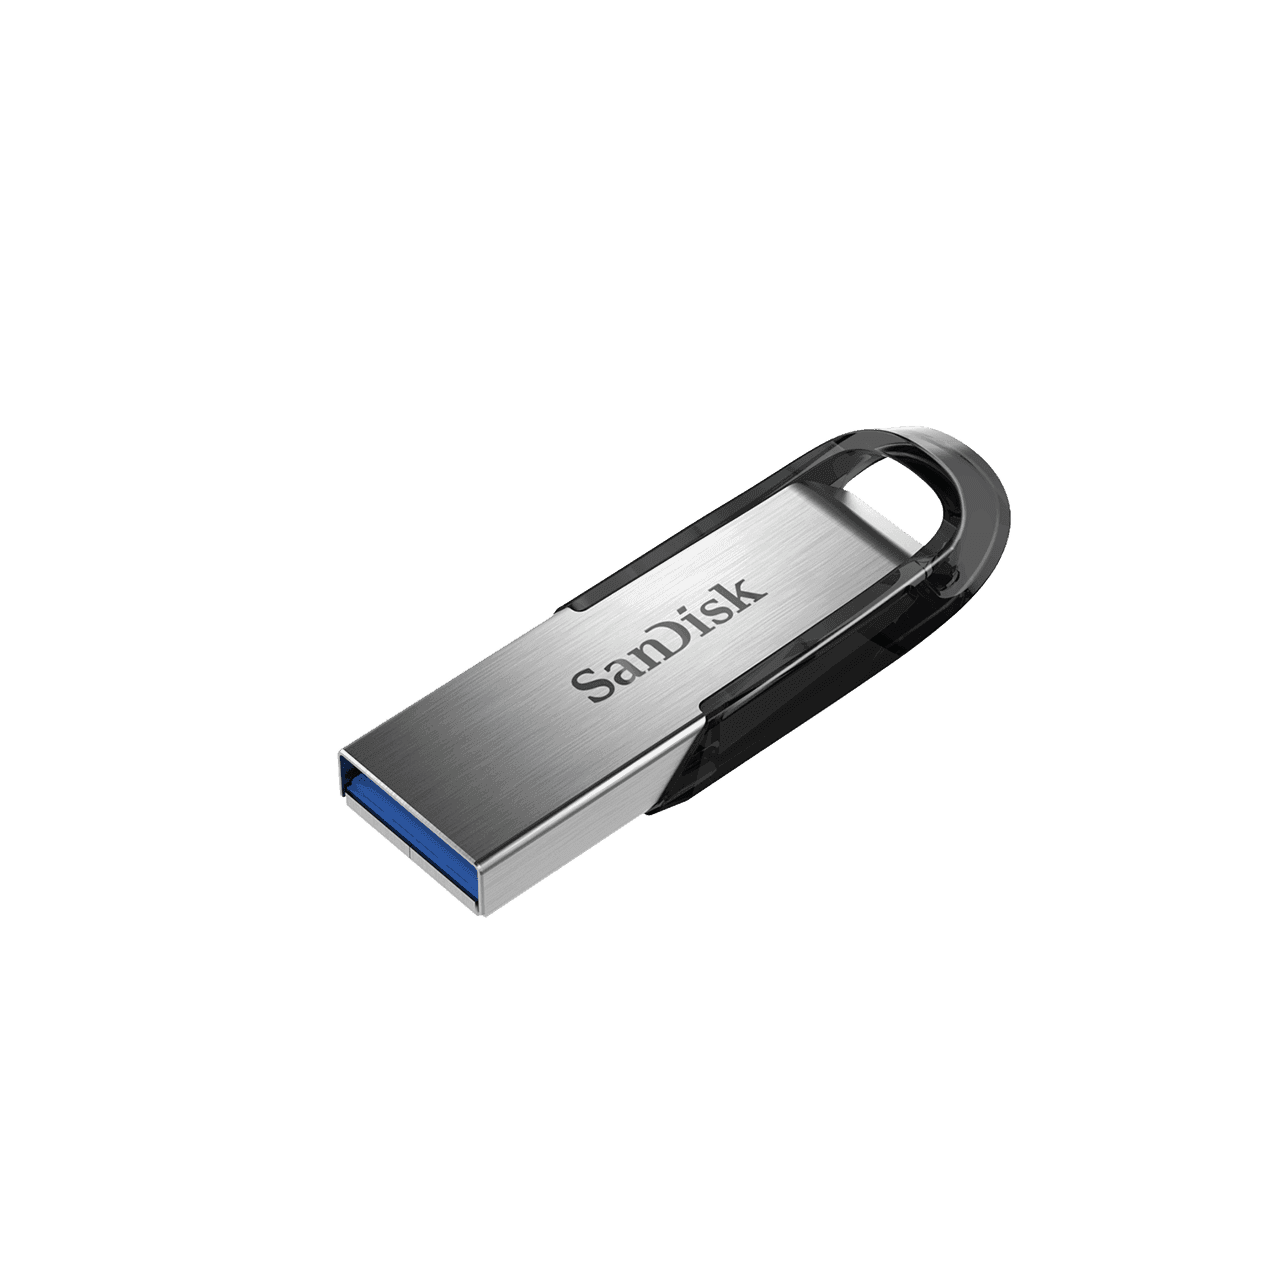 ULTRA FLAIR USB3.0 FLASH DRIVE 64GB